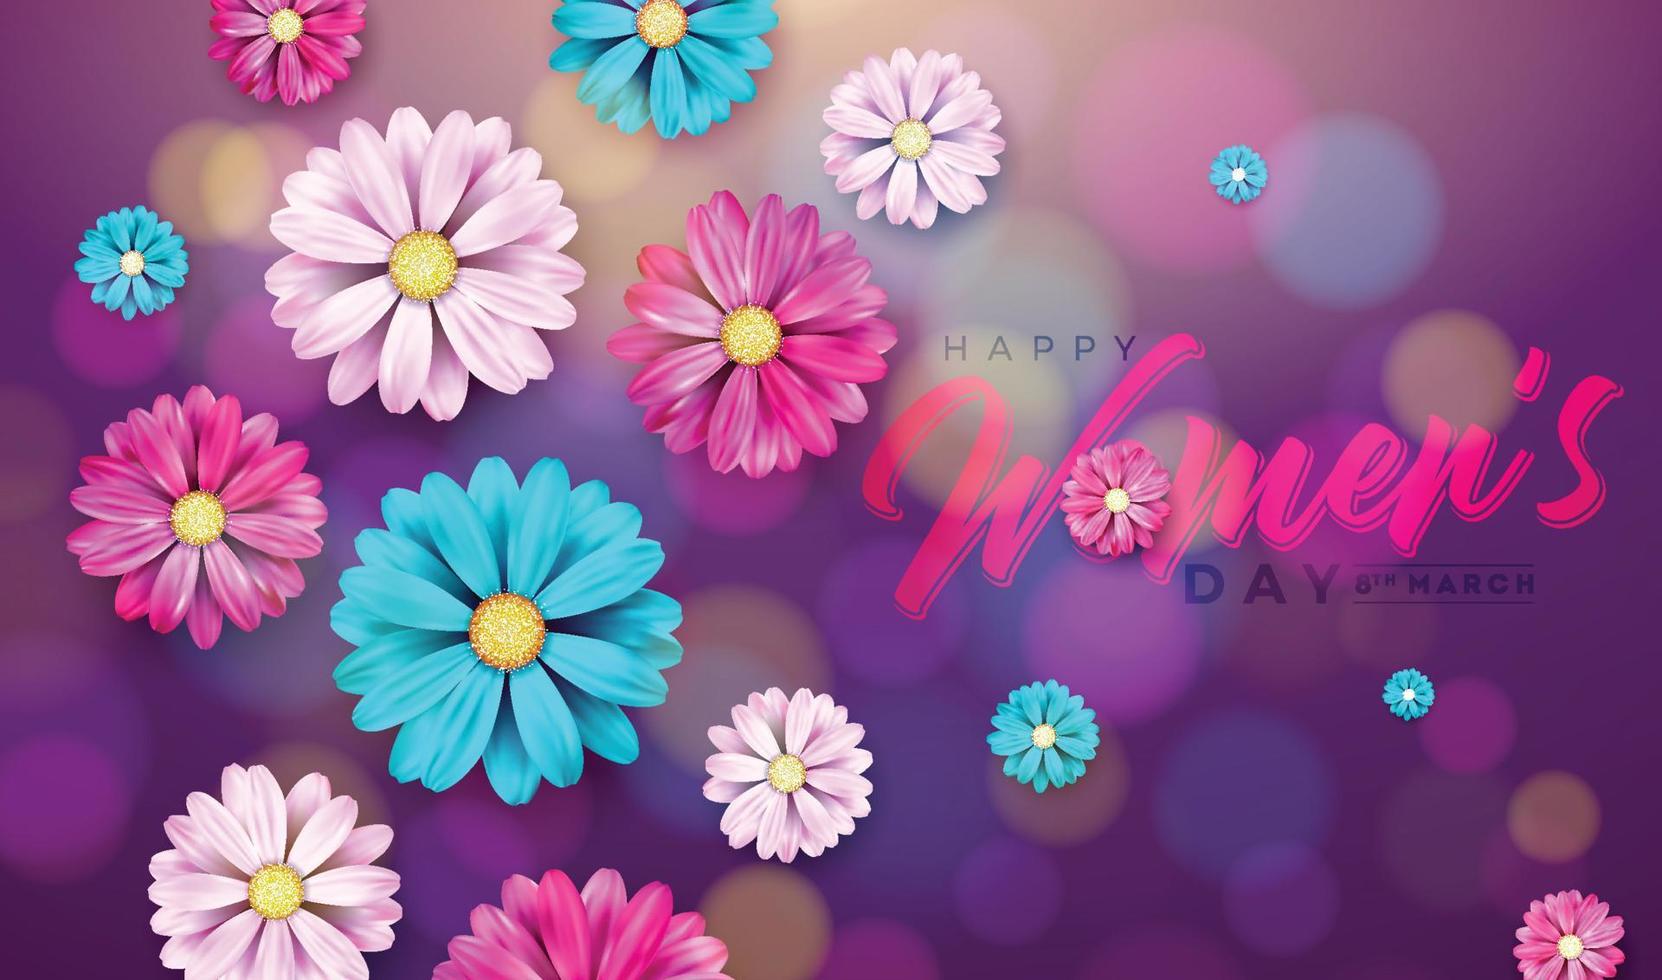 gelukkig vrouwendagontwerp met bloem en typografiebrief op paarse achtergrond vector